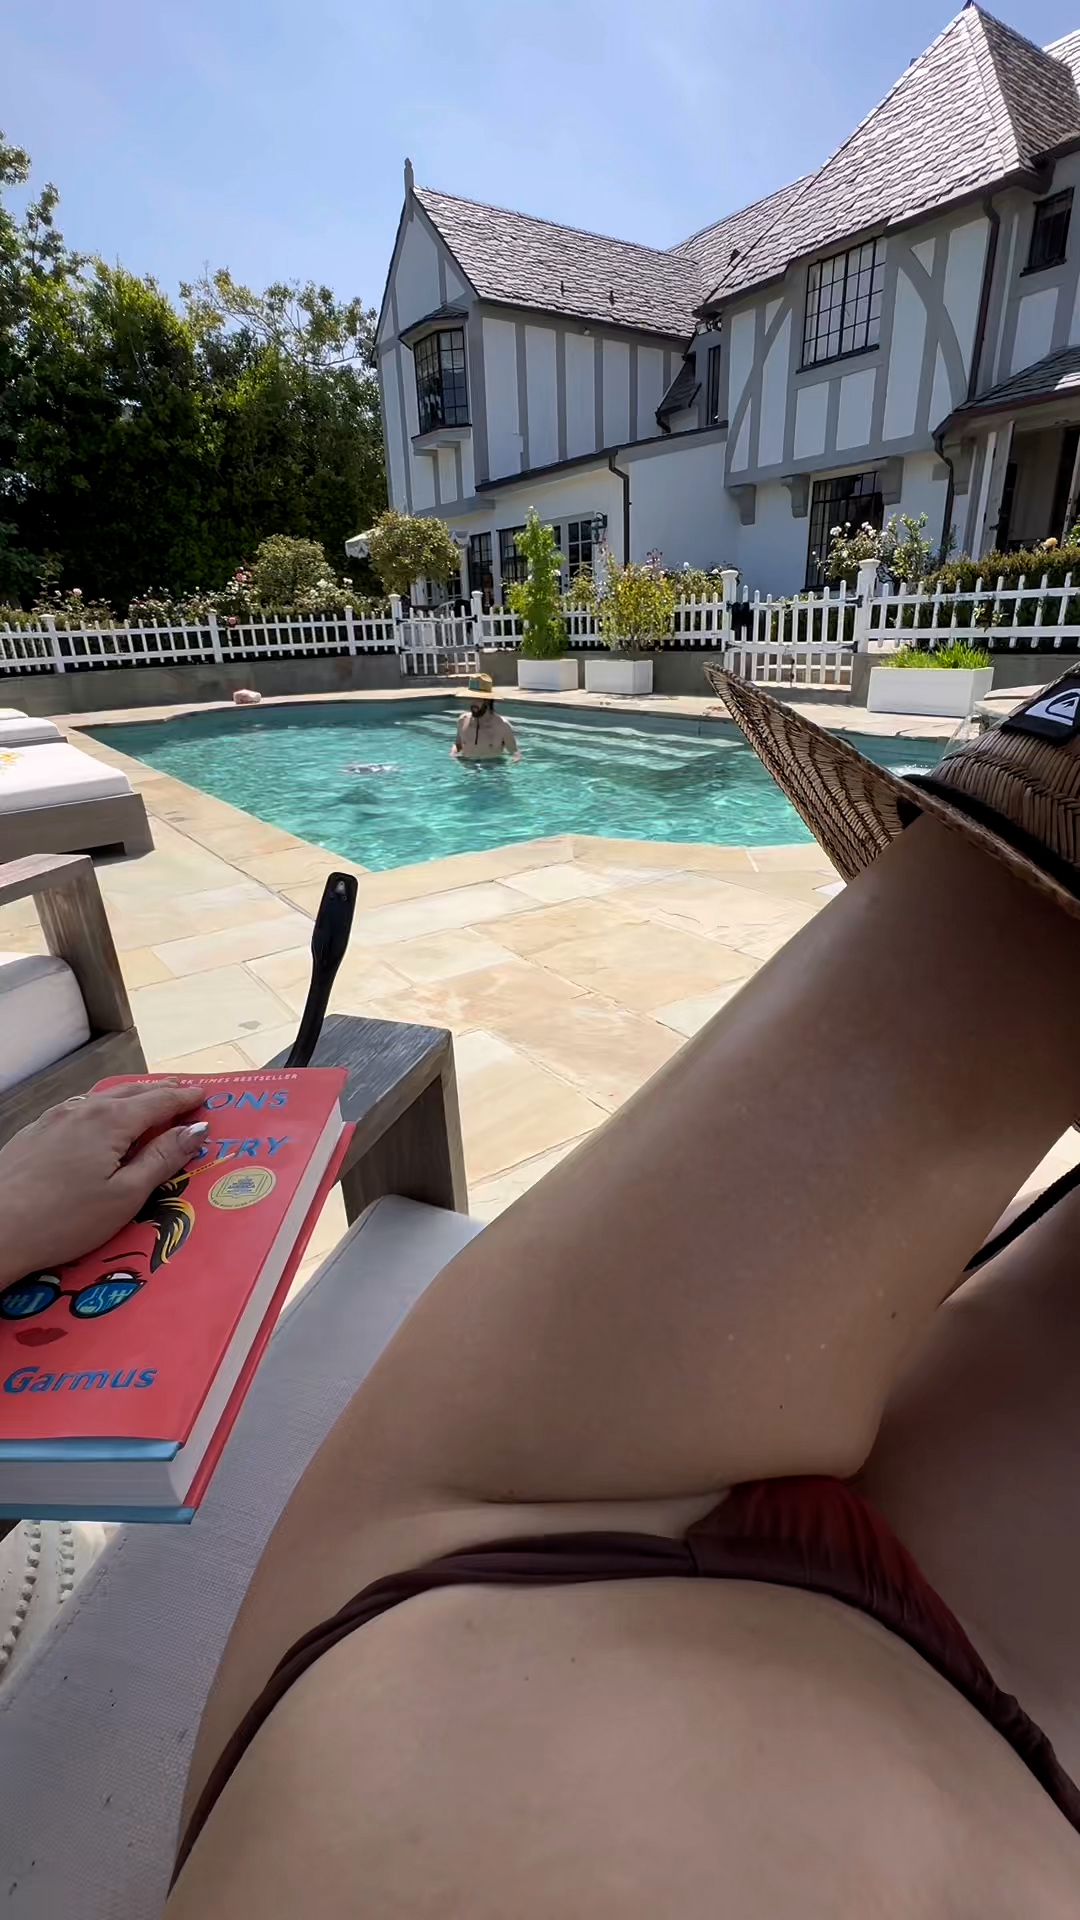 Kate-Hudson-Topless-The-Fappening-Blog-3.jpg